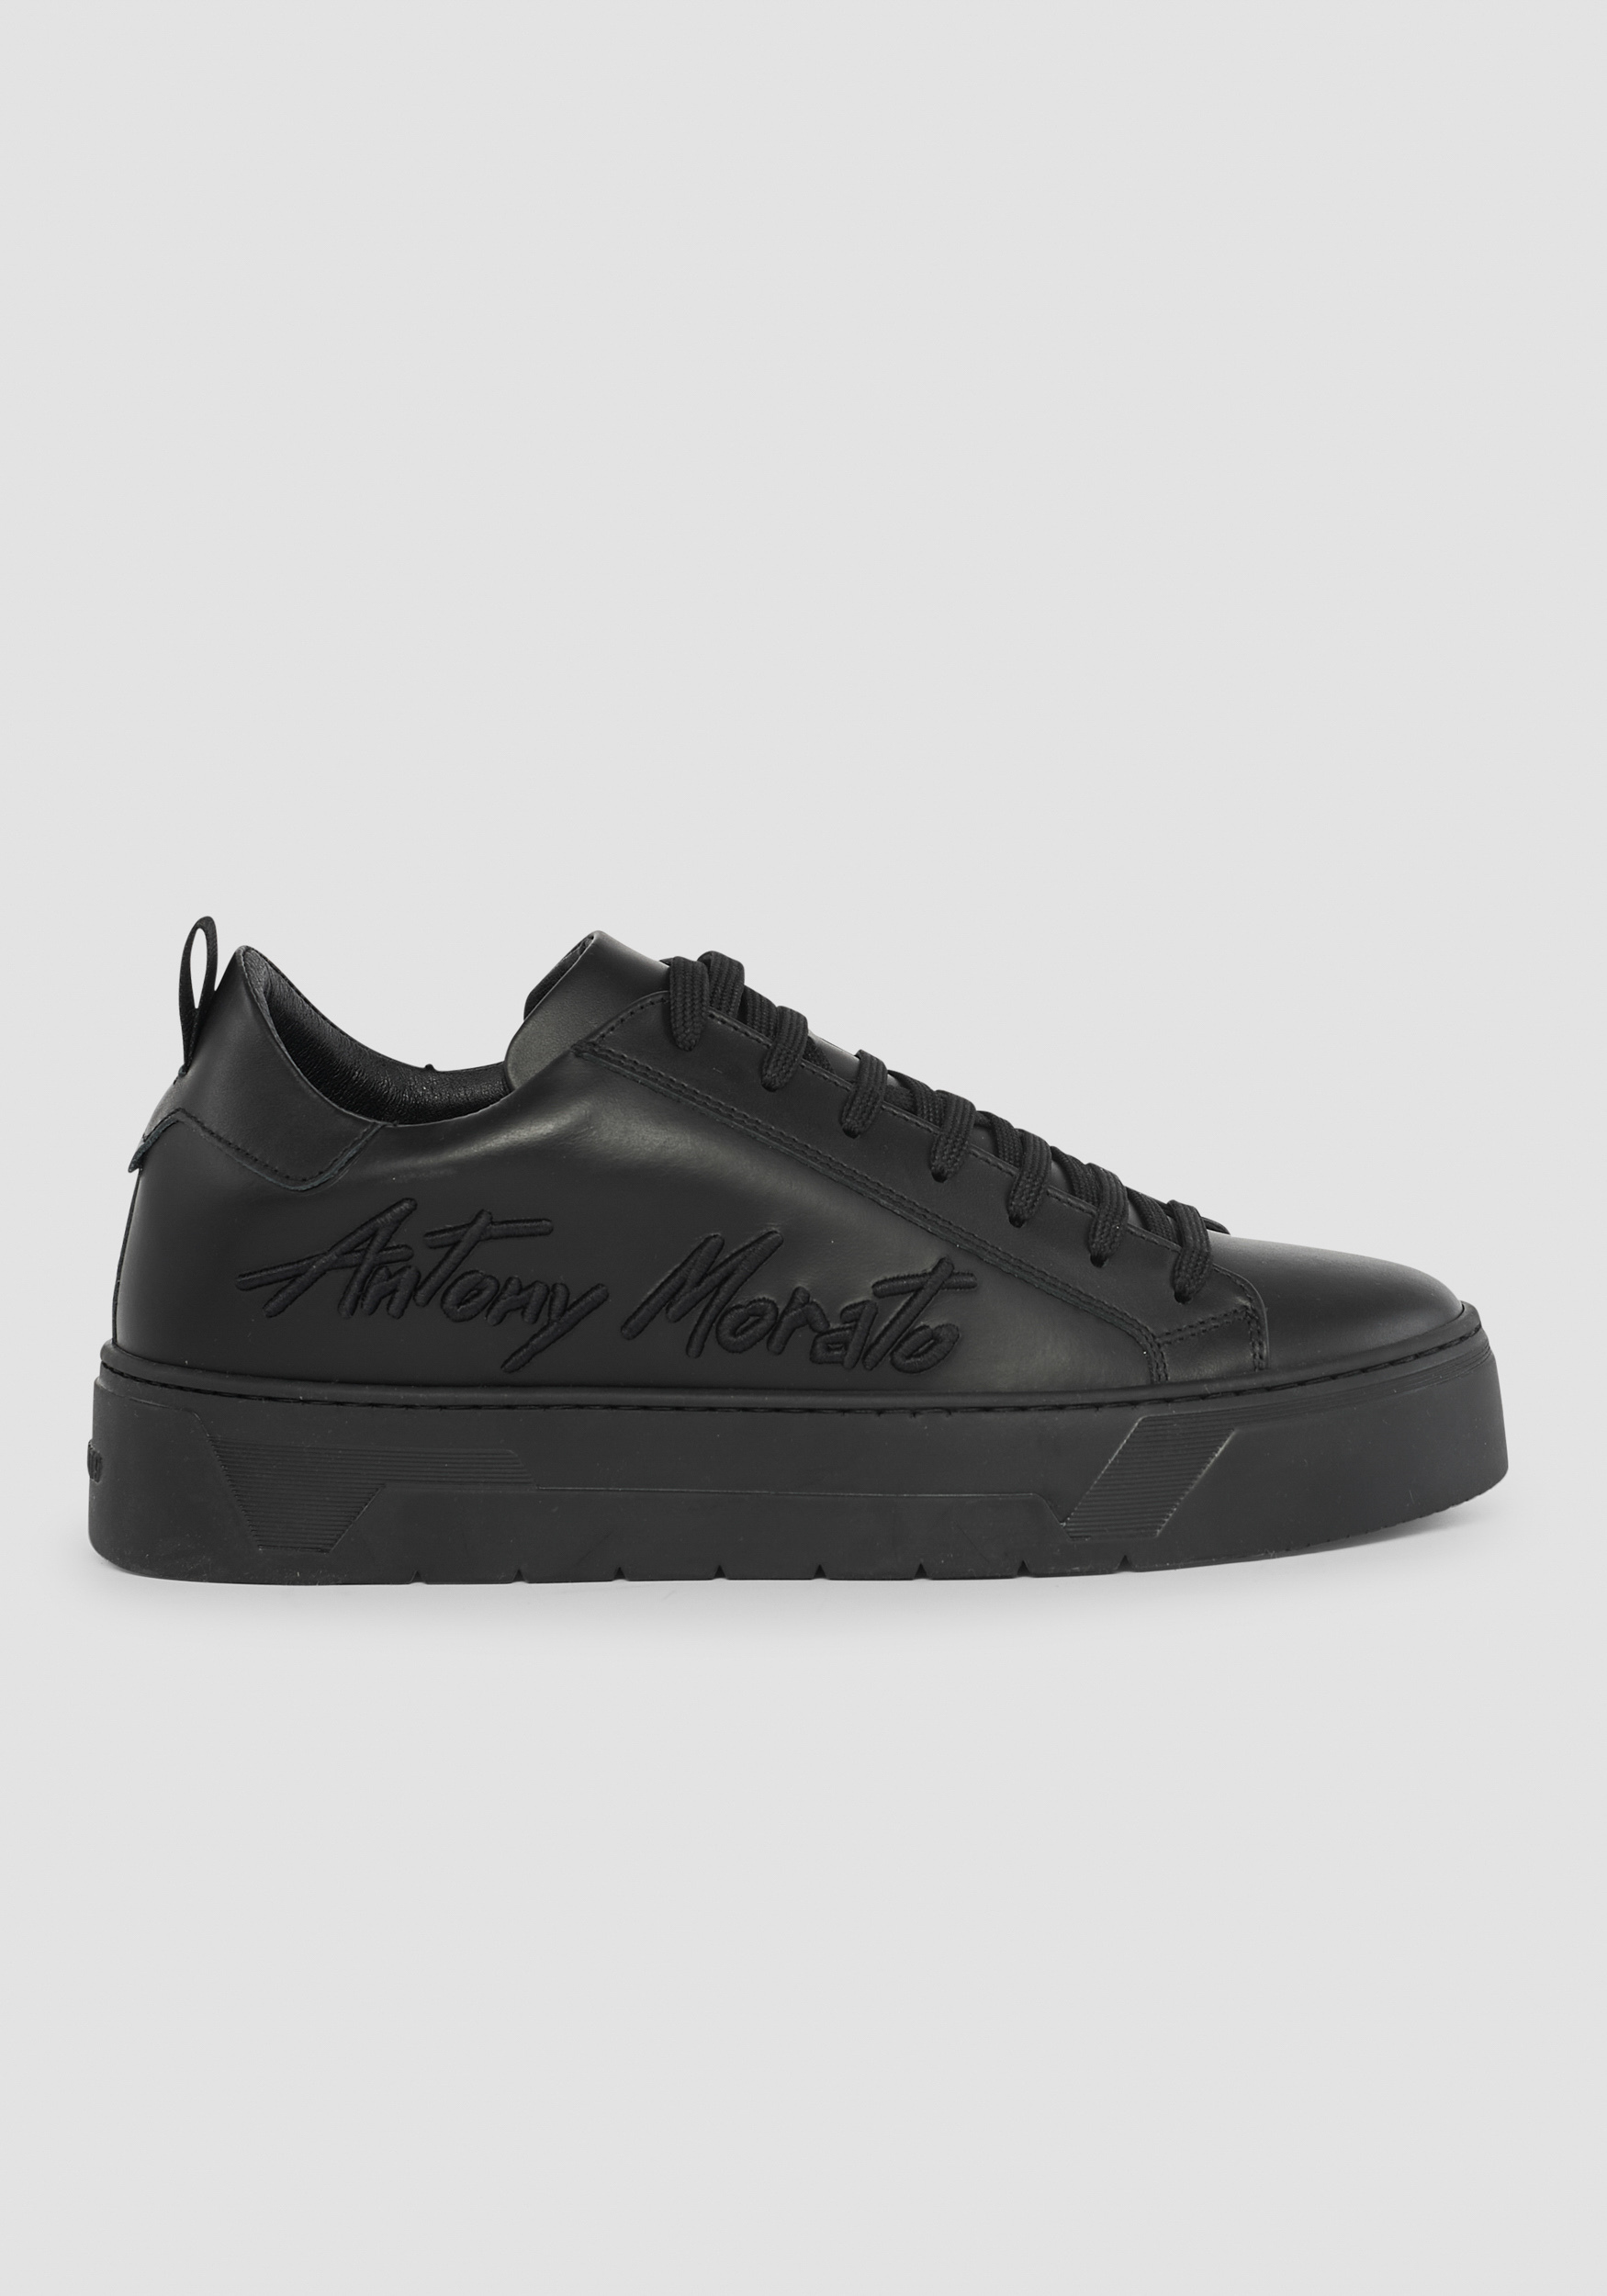 Antony Morato Sneakers Basses Flare 100 % Cuir Avec Logo Sur Le Cote Noir | Homme Baskets